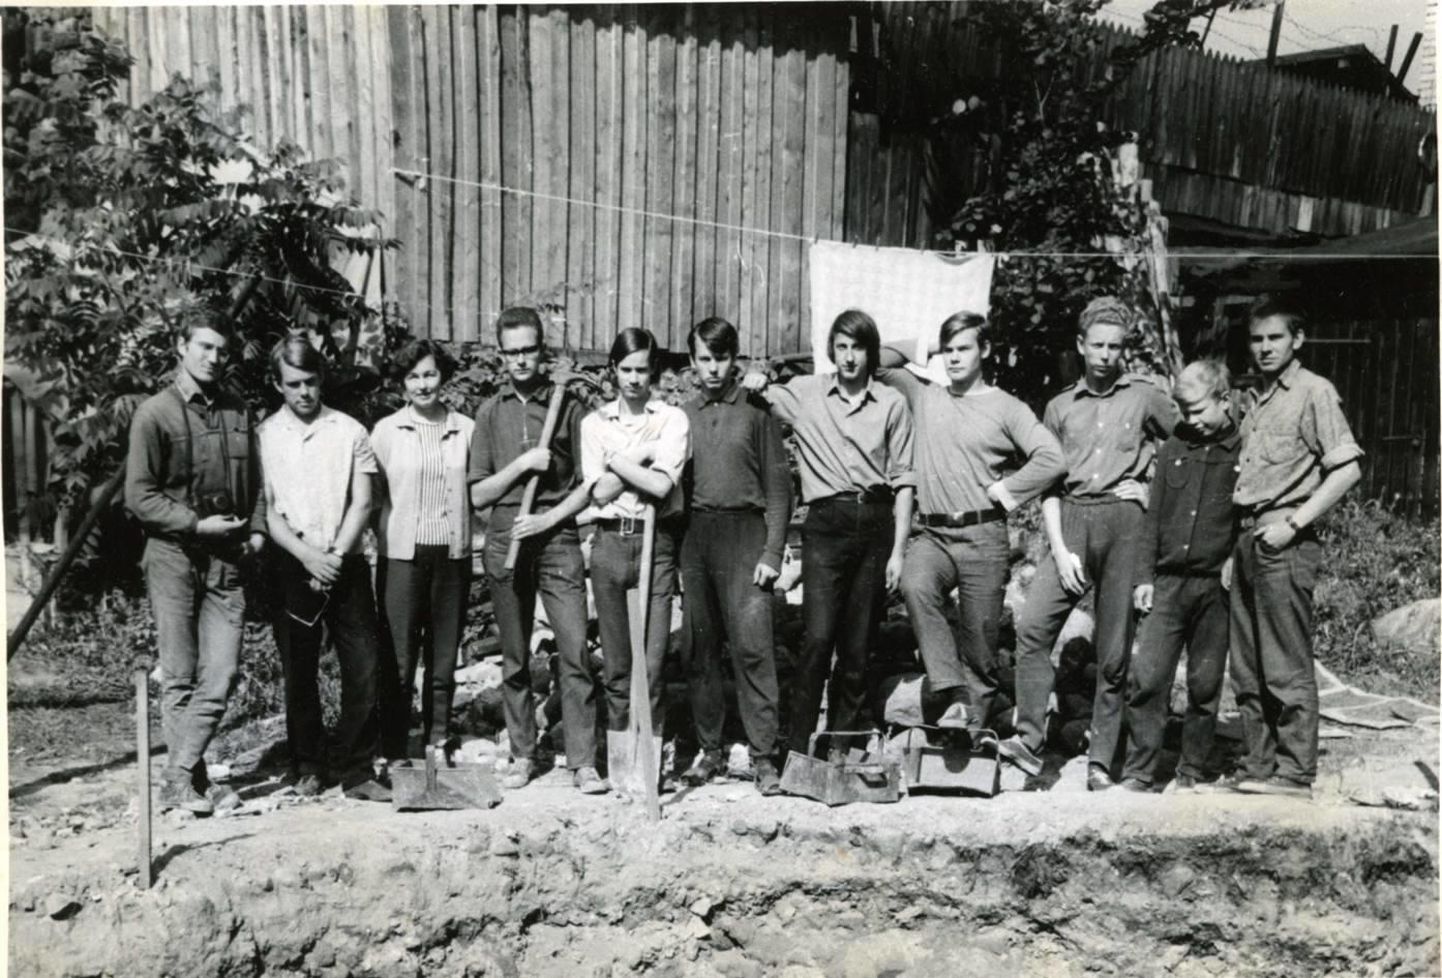 Osa toa 116 elanikke koos kursusekaaslastega 1970. aastal ülikooli kohviku taguse elumaja hoovis arheoloogiapraktikal.